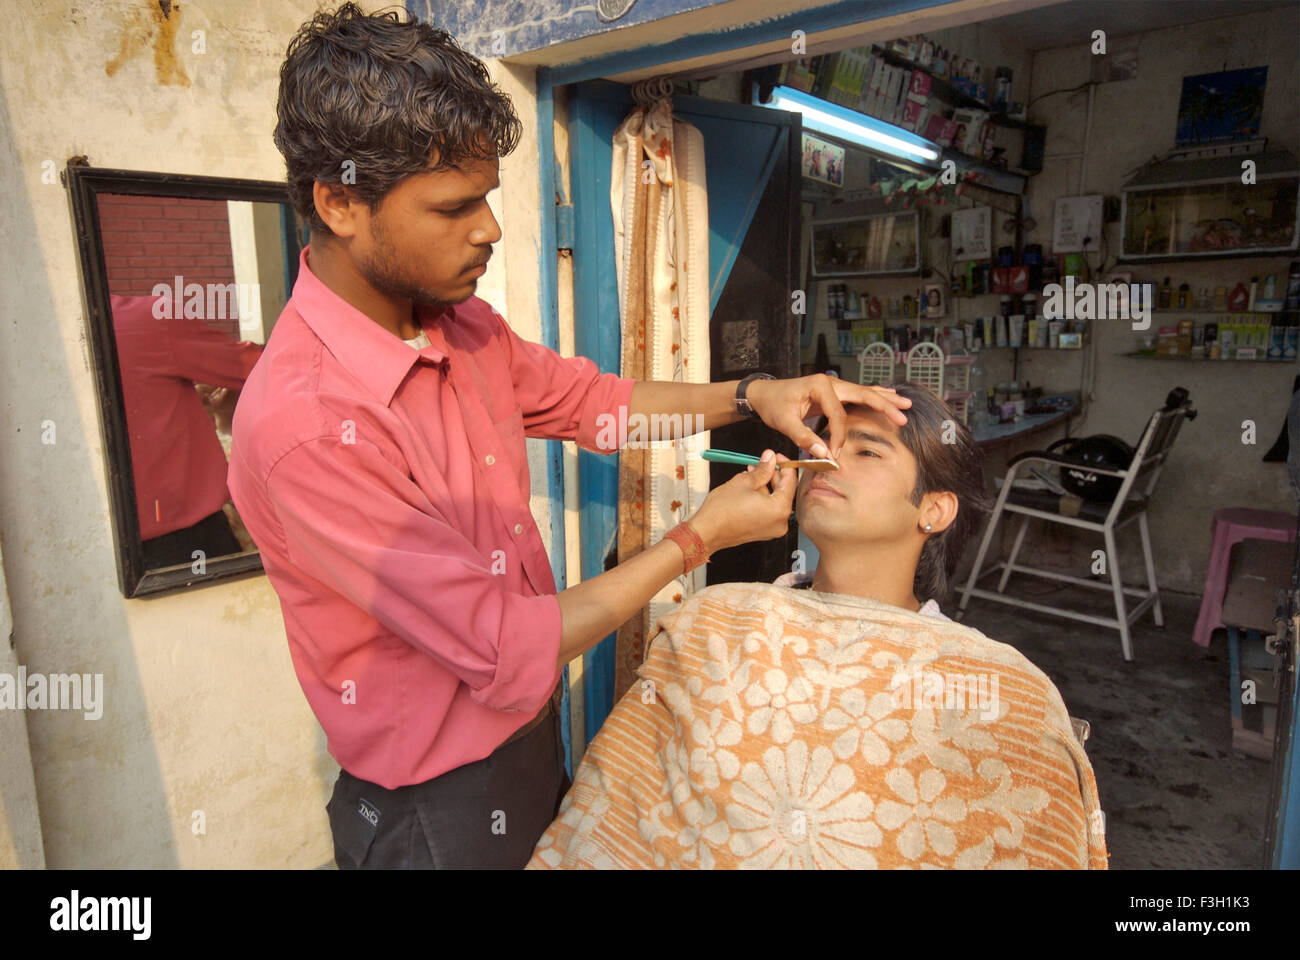 Un giovane uomo di ottenere la sua barba rasata al Taj capelli e salone di bellezza ; Dehradun ; Uttaranchal ; India Foto Stock